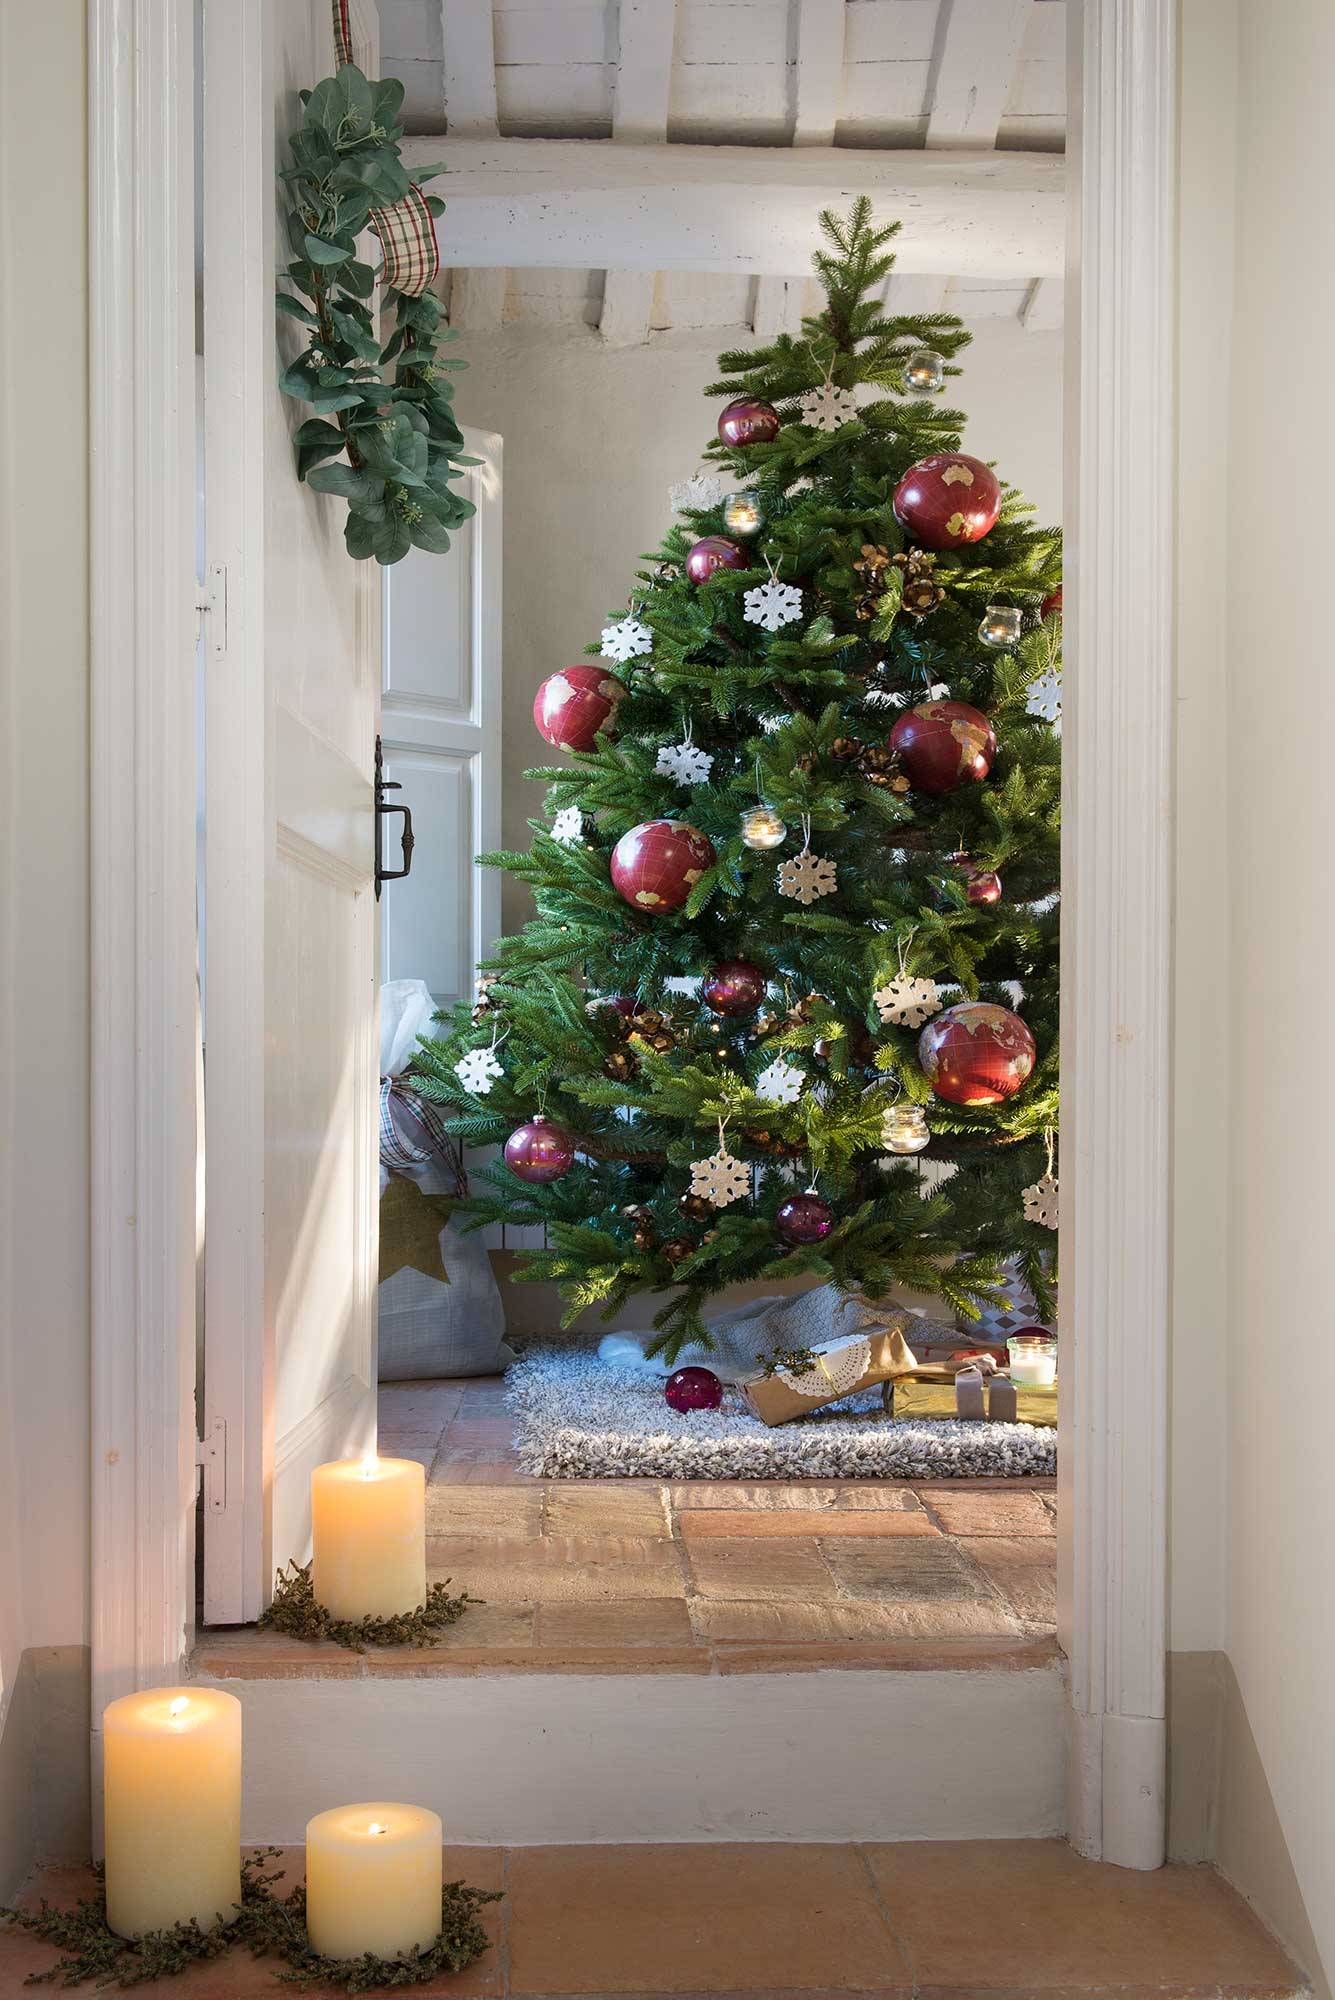 Recibidor con alfombra, velas, corona navideña en la puerta y árbol de Navidad.